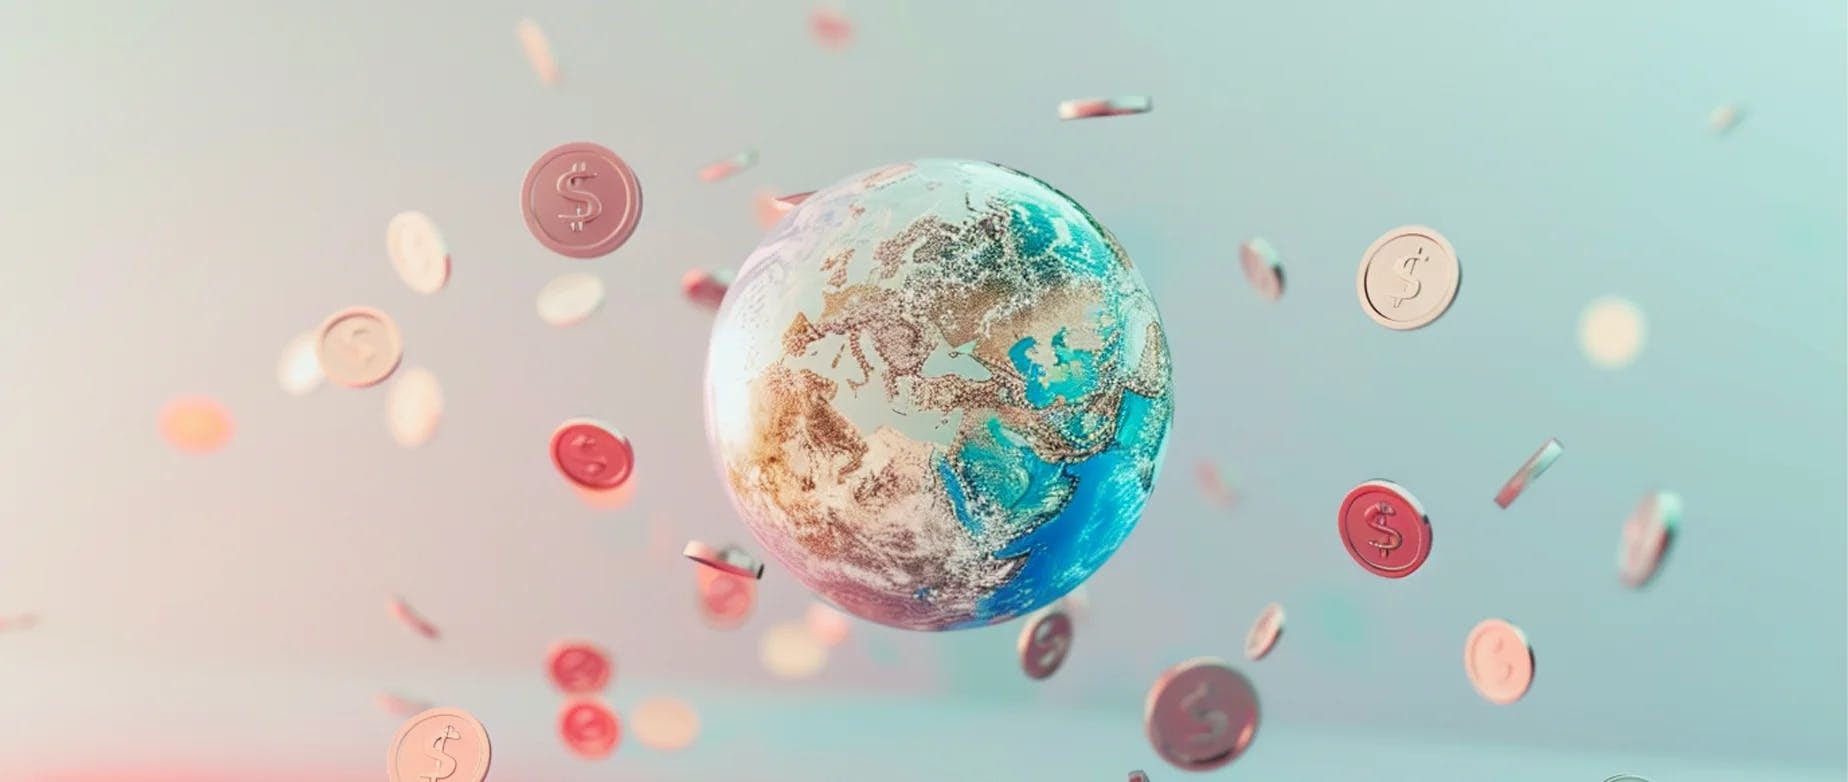 Globo terrestre com moedas flutuando em redor, simbolizando a transferência de dinheiro à volta do mundo. 